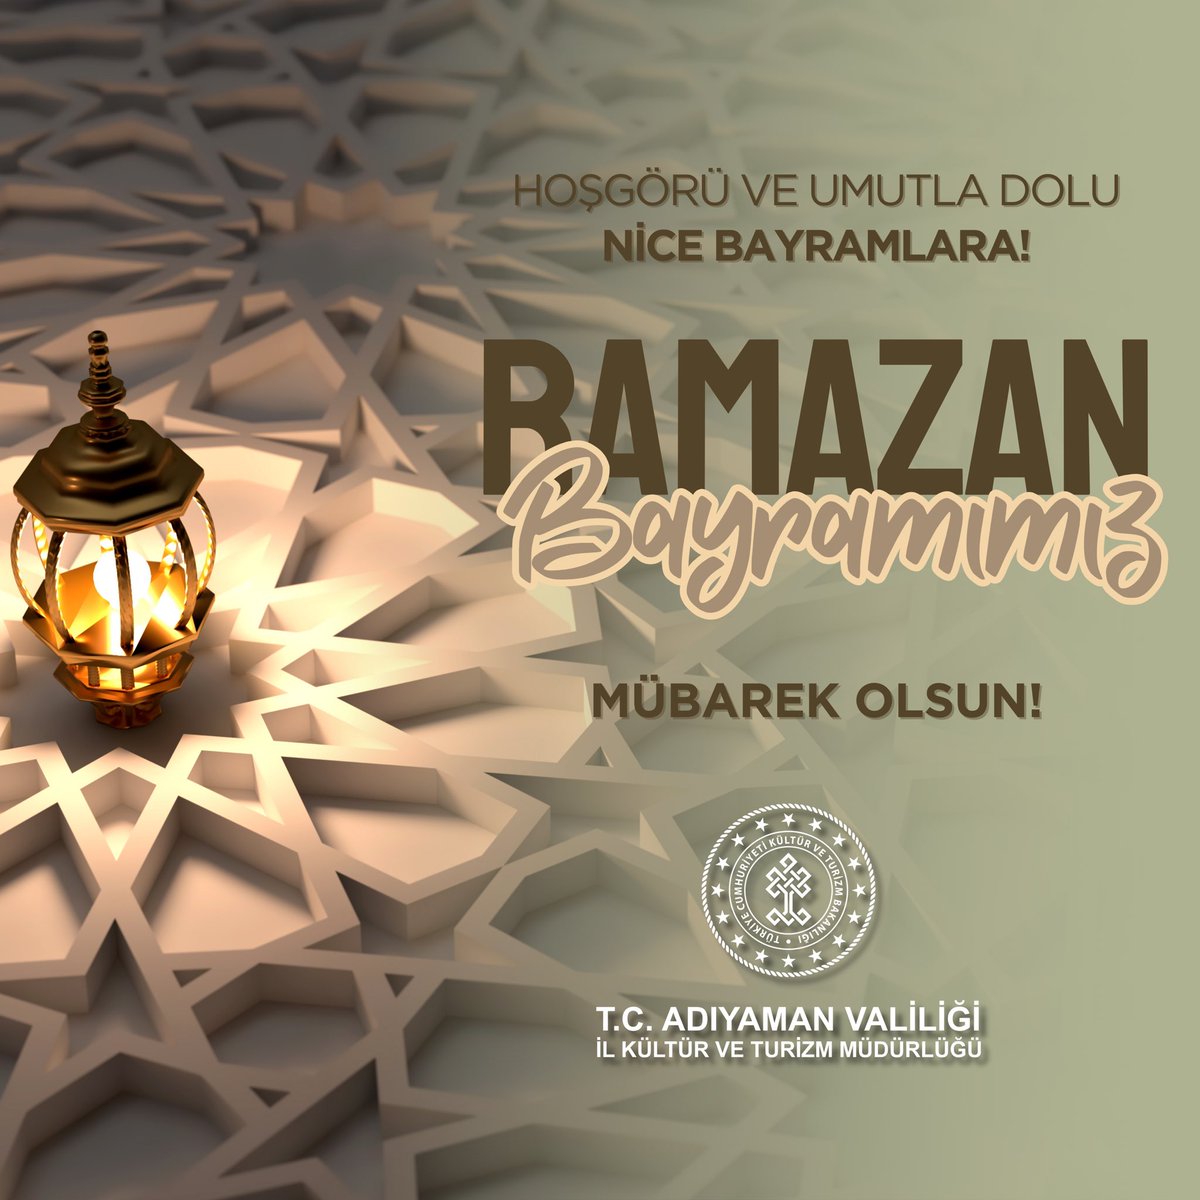 Hoşgörü ve umutla dolu nice bayramlara! 

#RamazanBayramımızMübarekOlsun